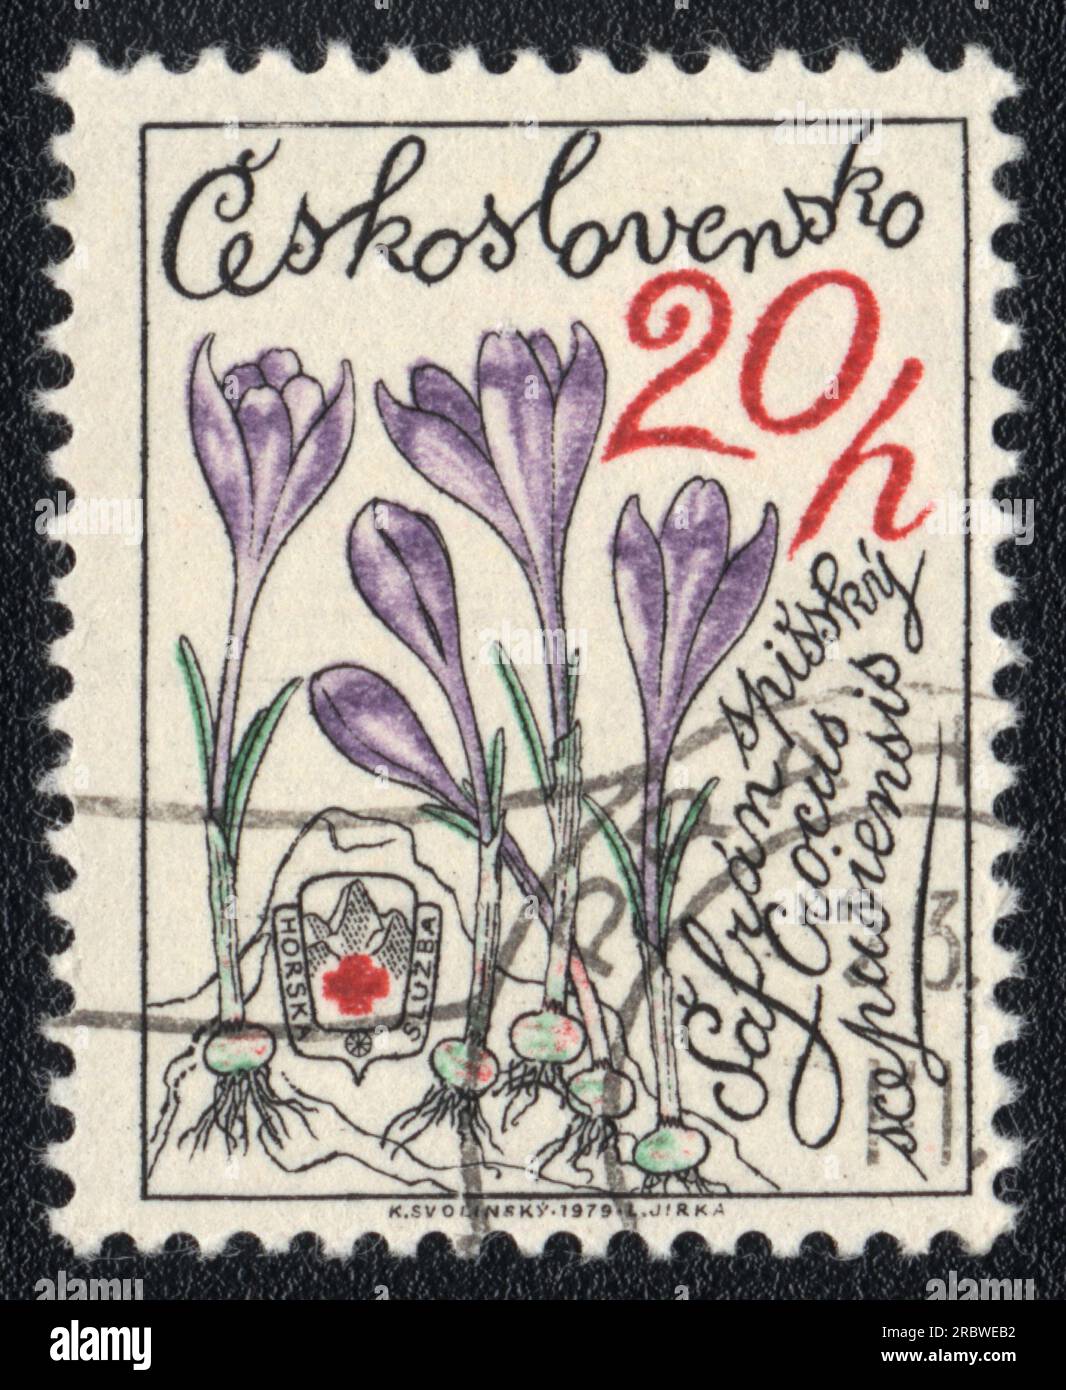 Ein in der Tschechoslowakei gedruckter Stempel zeigt das Bild eines Crocus scepusiensis, Kräuterserie, 1979 Stockfoto